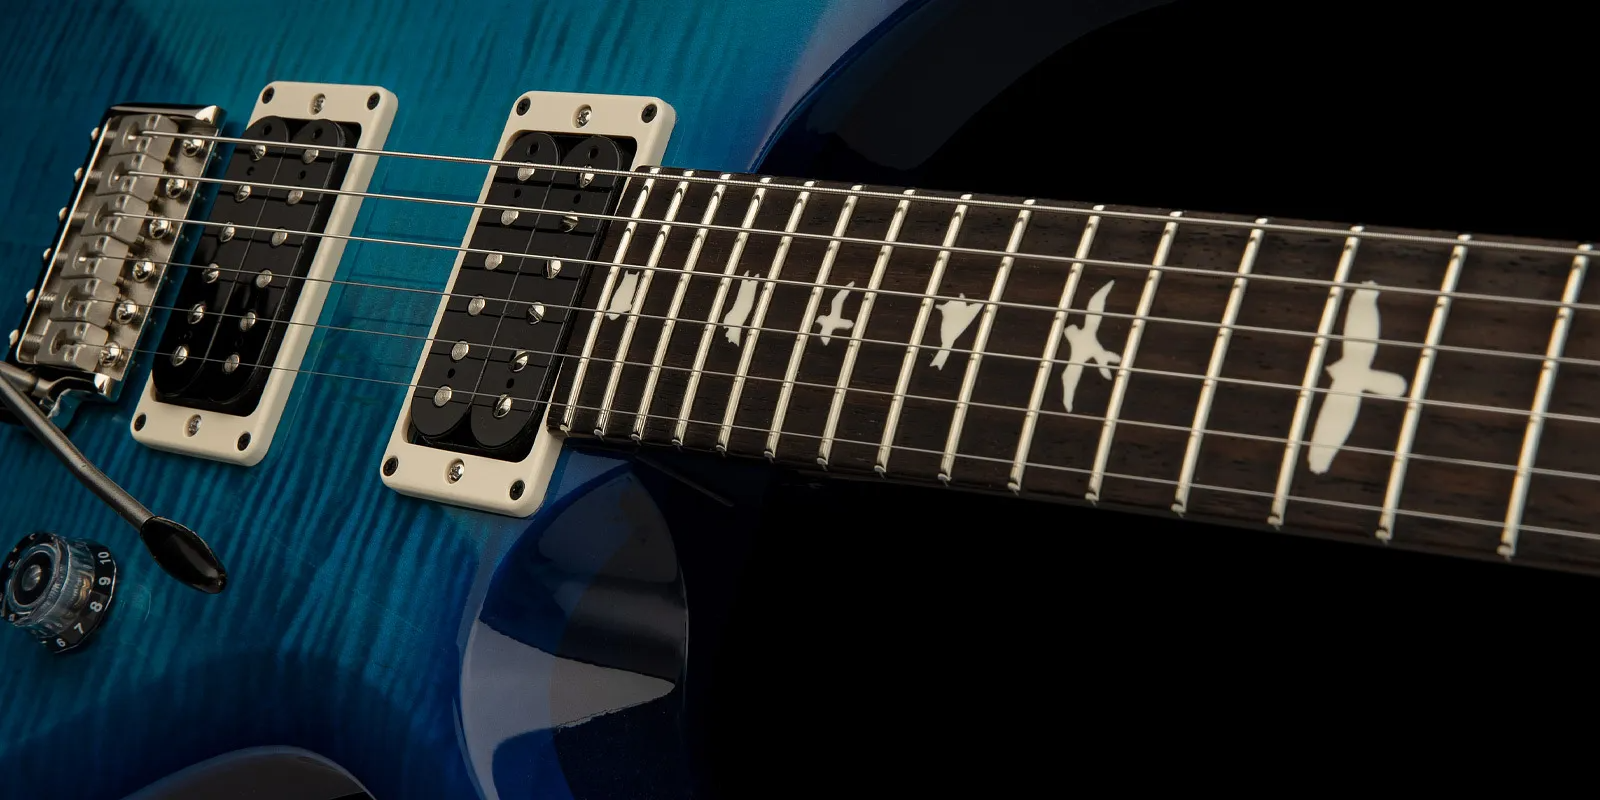 Prs S2 Custom 24 Usa Hh Trem Rw - Lake Blue - Guitarra eléctrica de doble corte. - Variation 2